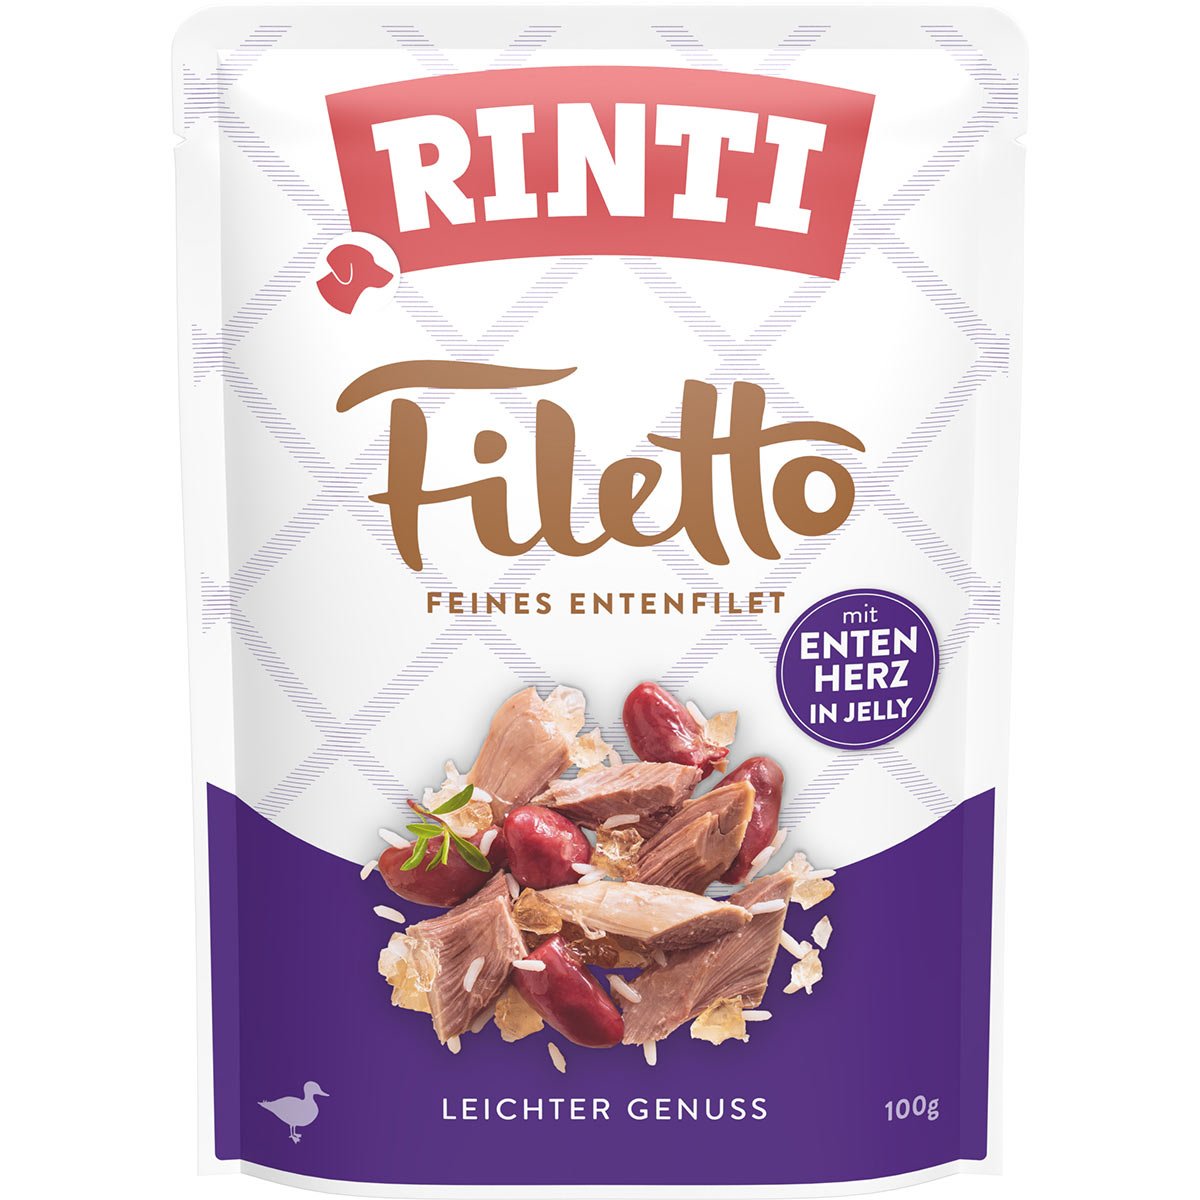 RINTI Filetto Entenfilet mit Entenherz 24x100g von Rinti